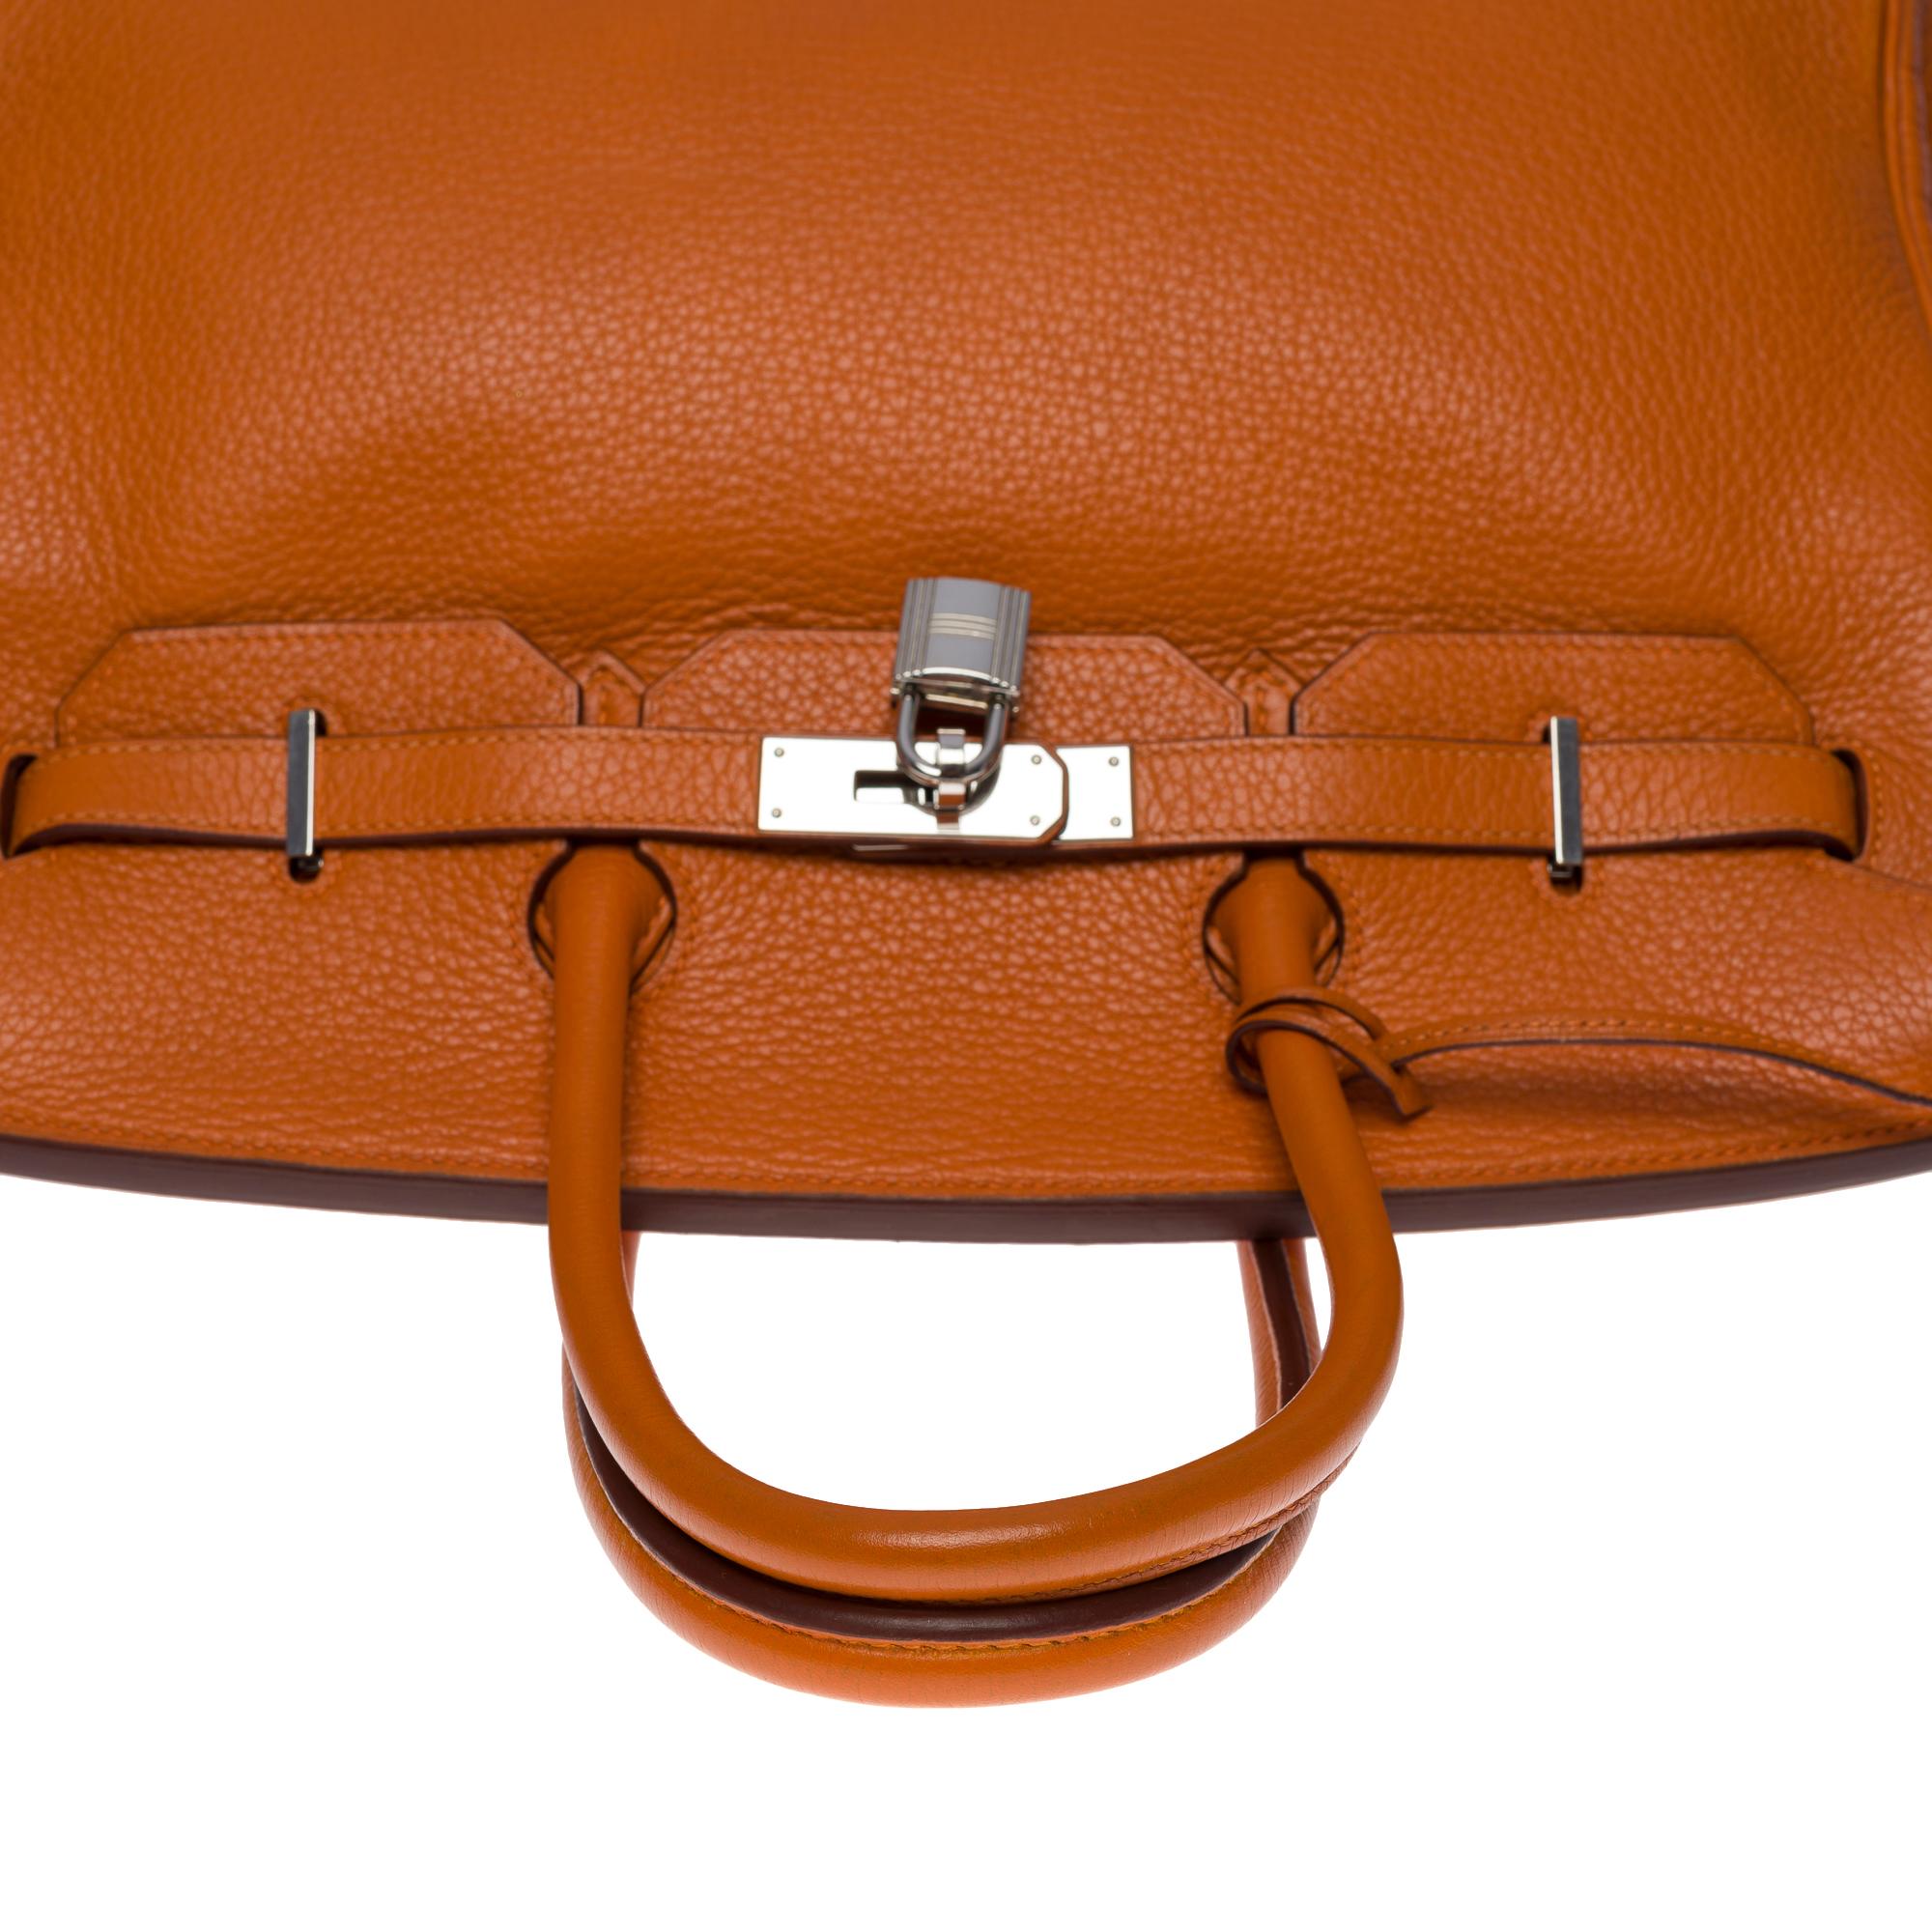 Stunning Hermès Birkin 35 handbag in Orange Togo leather, SHW 3